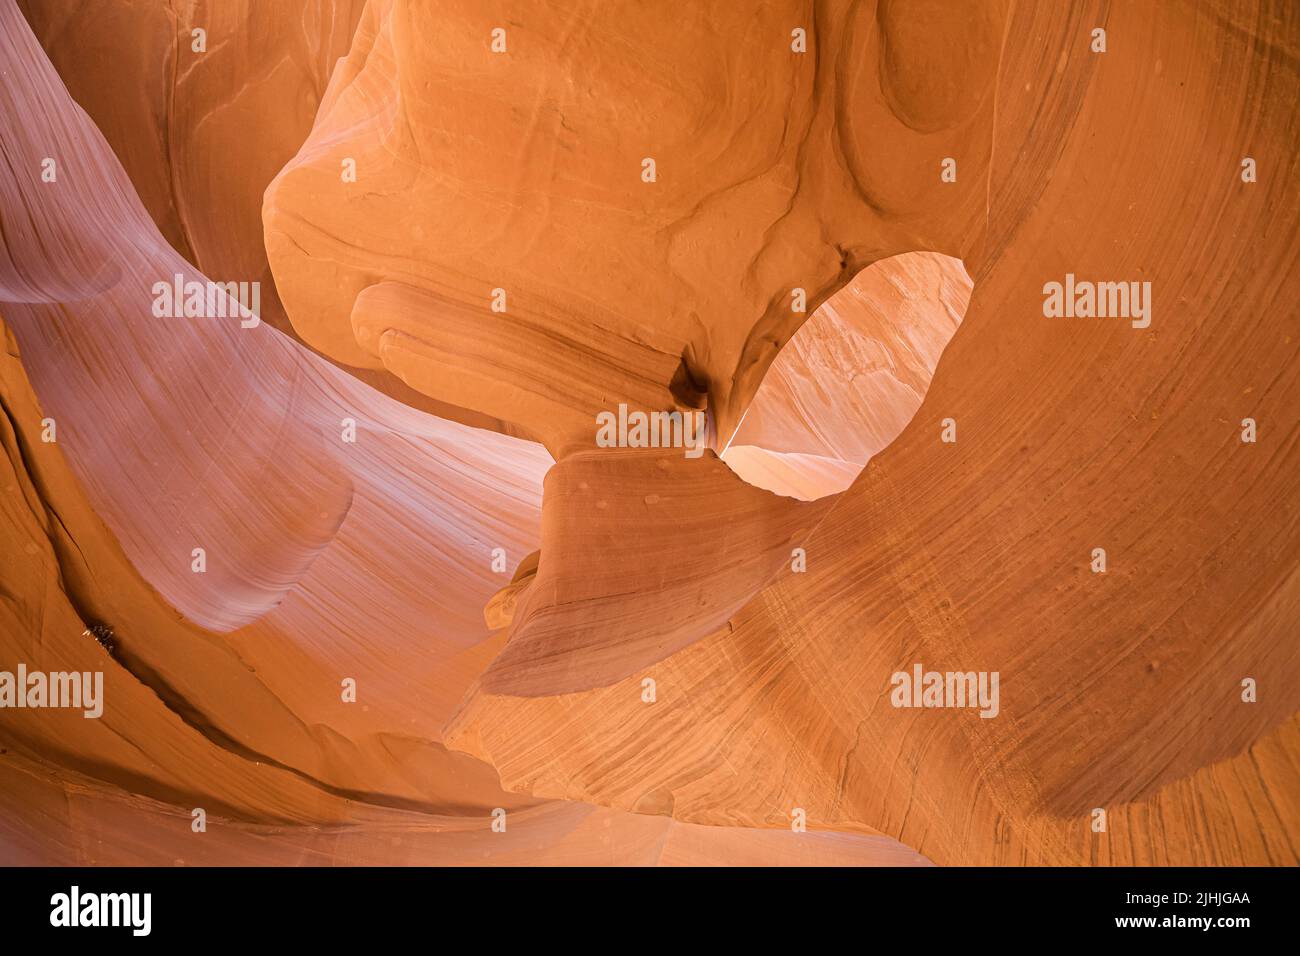 Eye of the Eagle in Lower Antelope Canyon, Arizona, United States. Stock Photo